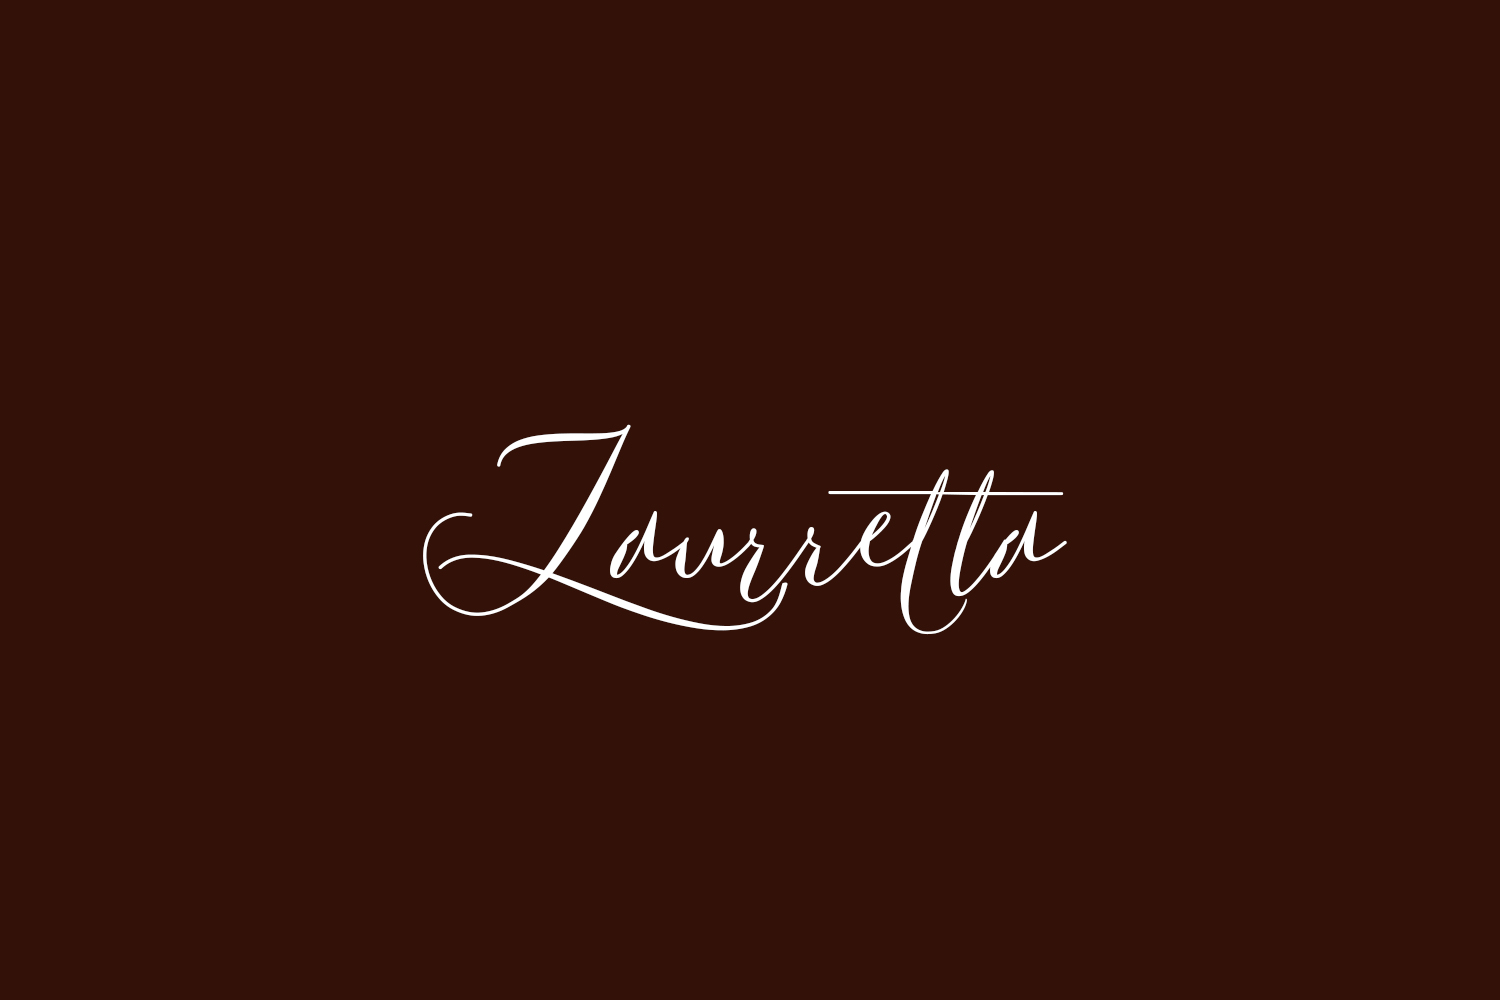 Laurretta Free Font